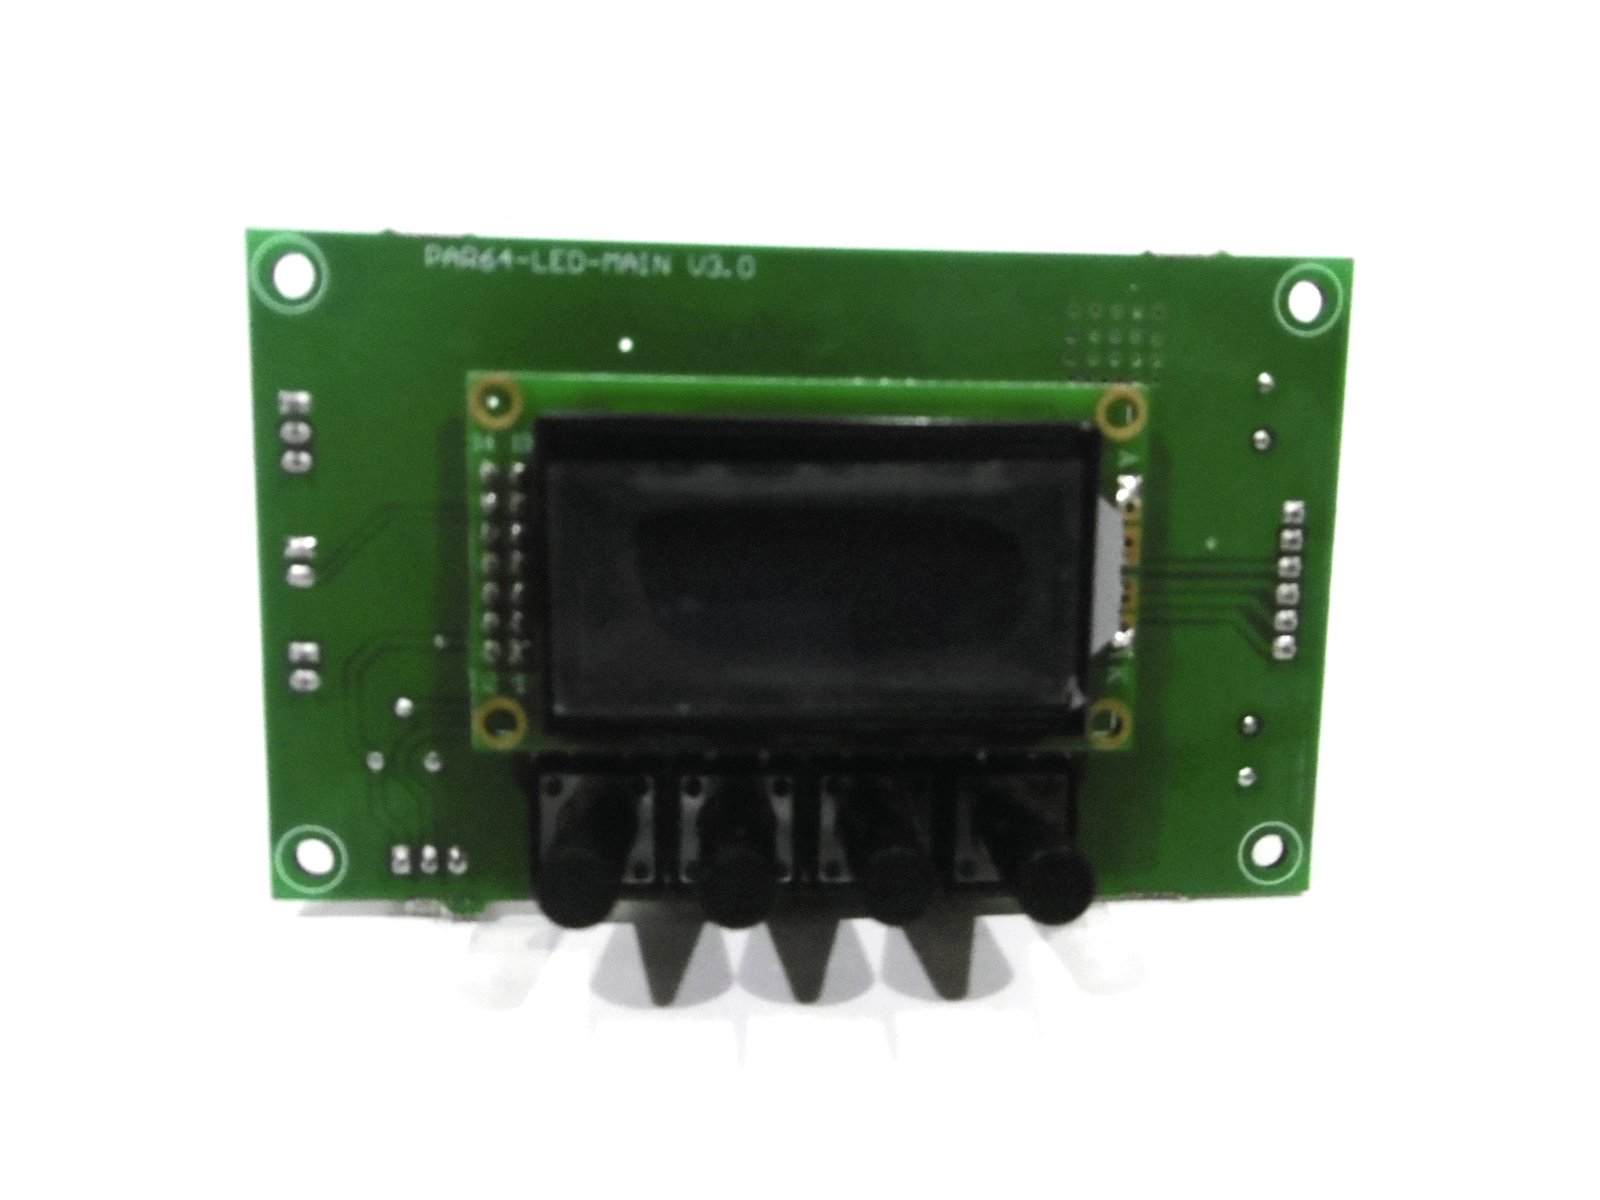 Platine (Display) LED PLL-480 CW/WW (PAR64-LED-MAIN V3.0) MAIN 6 pol